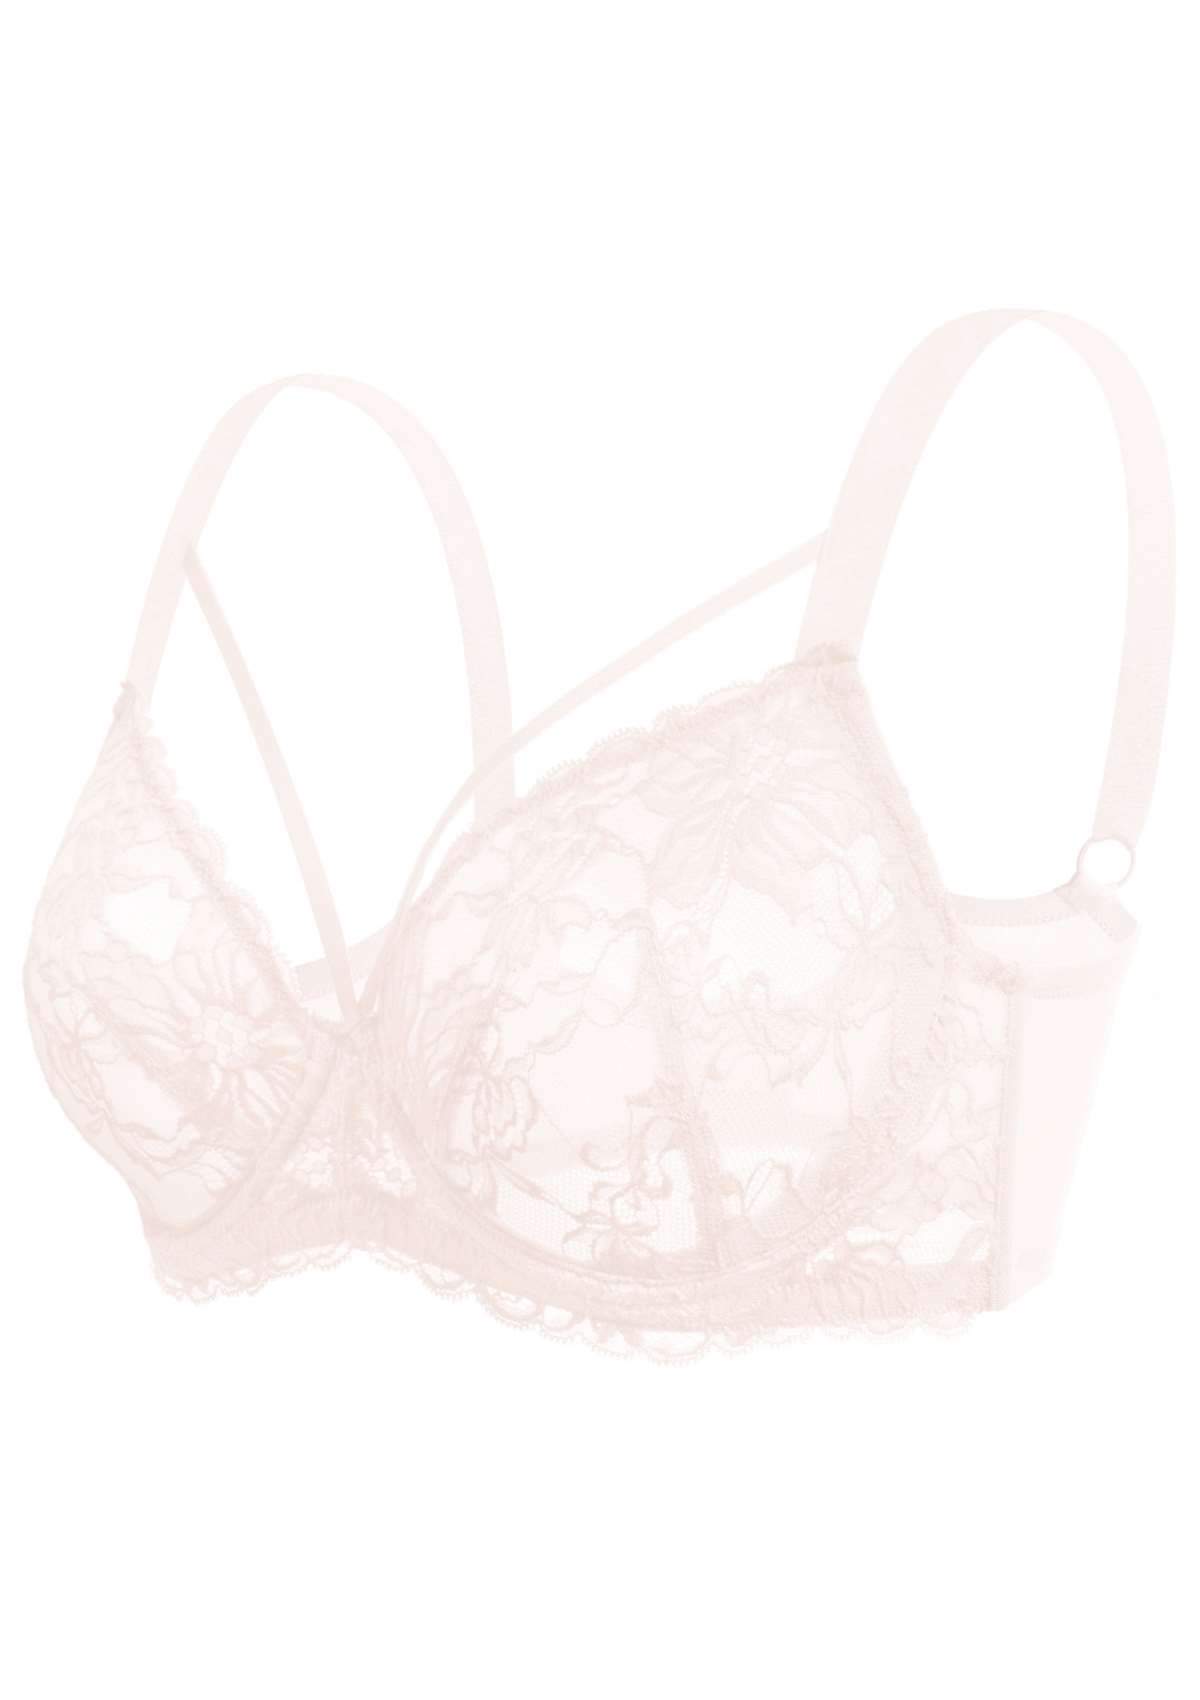 HSIA Pretty In Petals Underwire Lace Bra: No Padding, Full Cup Bra - Pink / 34 / C